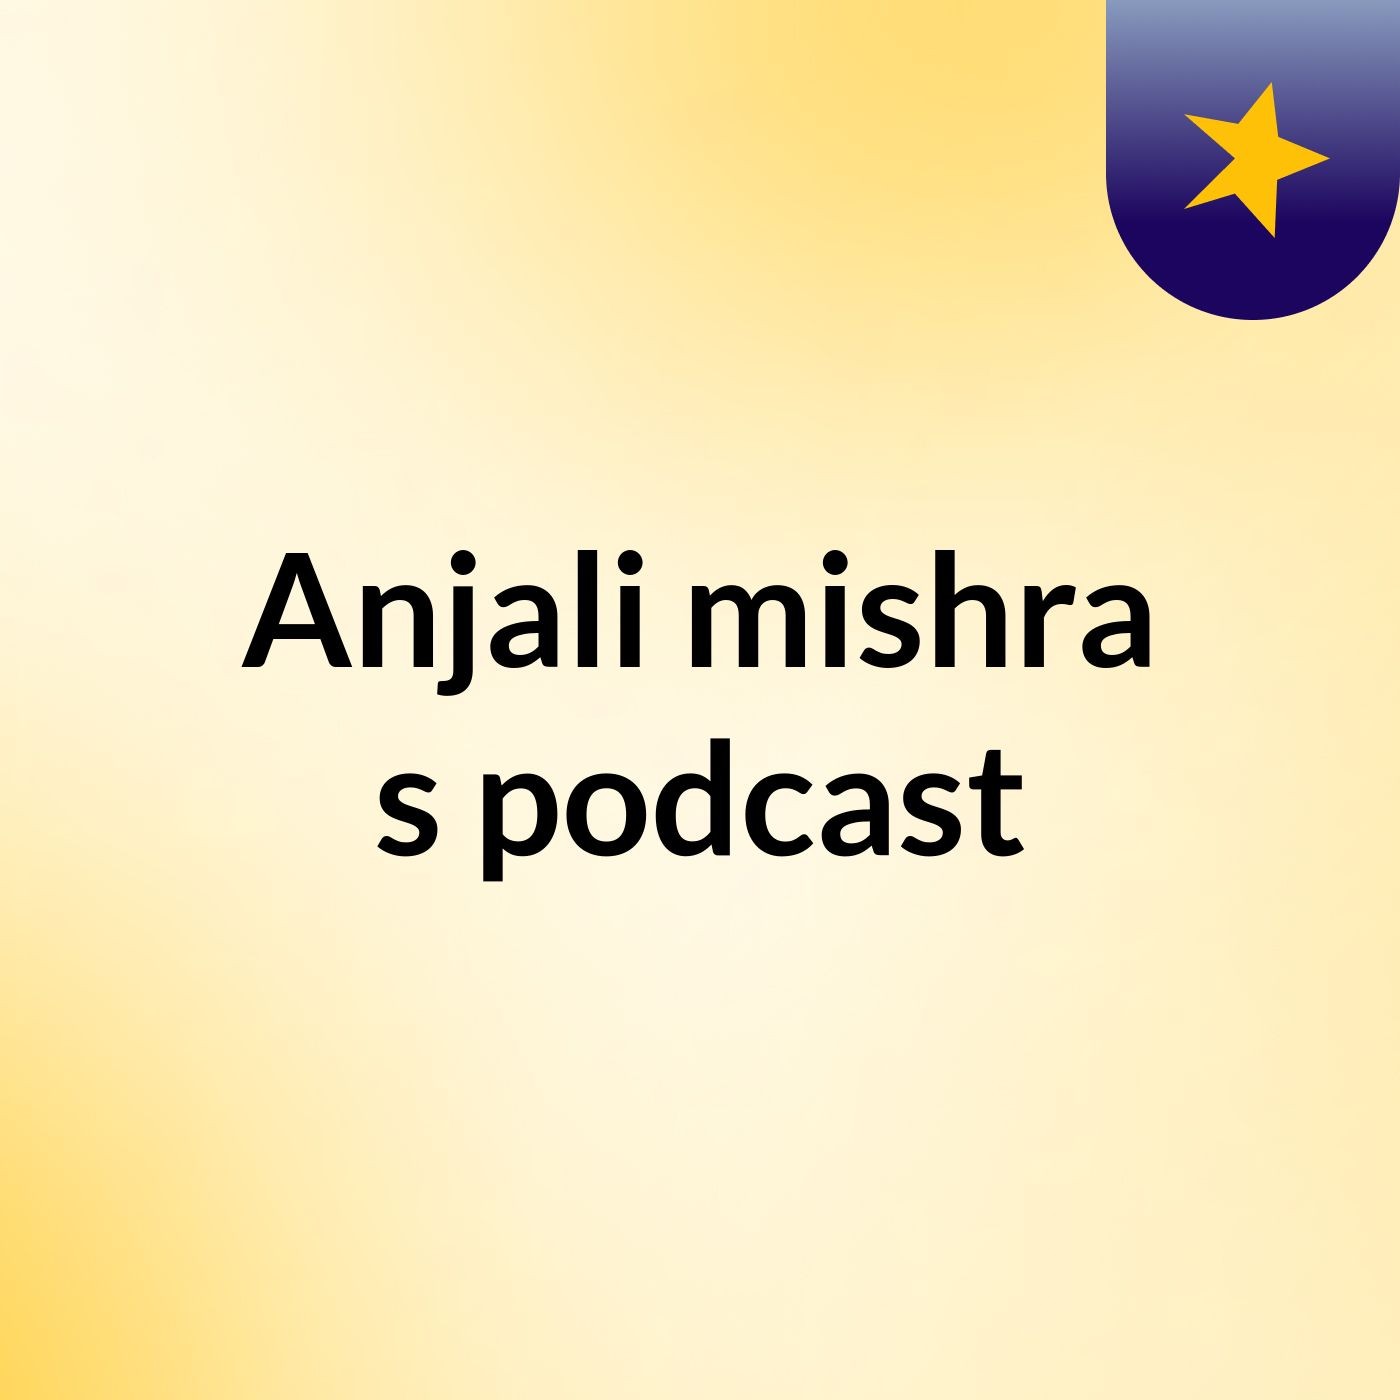 Episode 3 - Anjali mishra's podcast